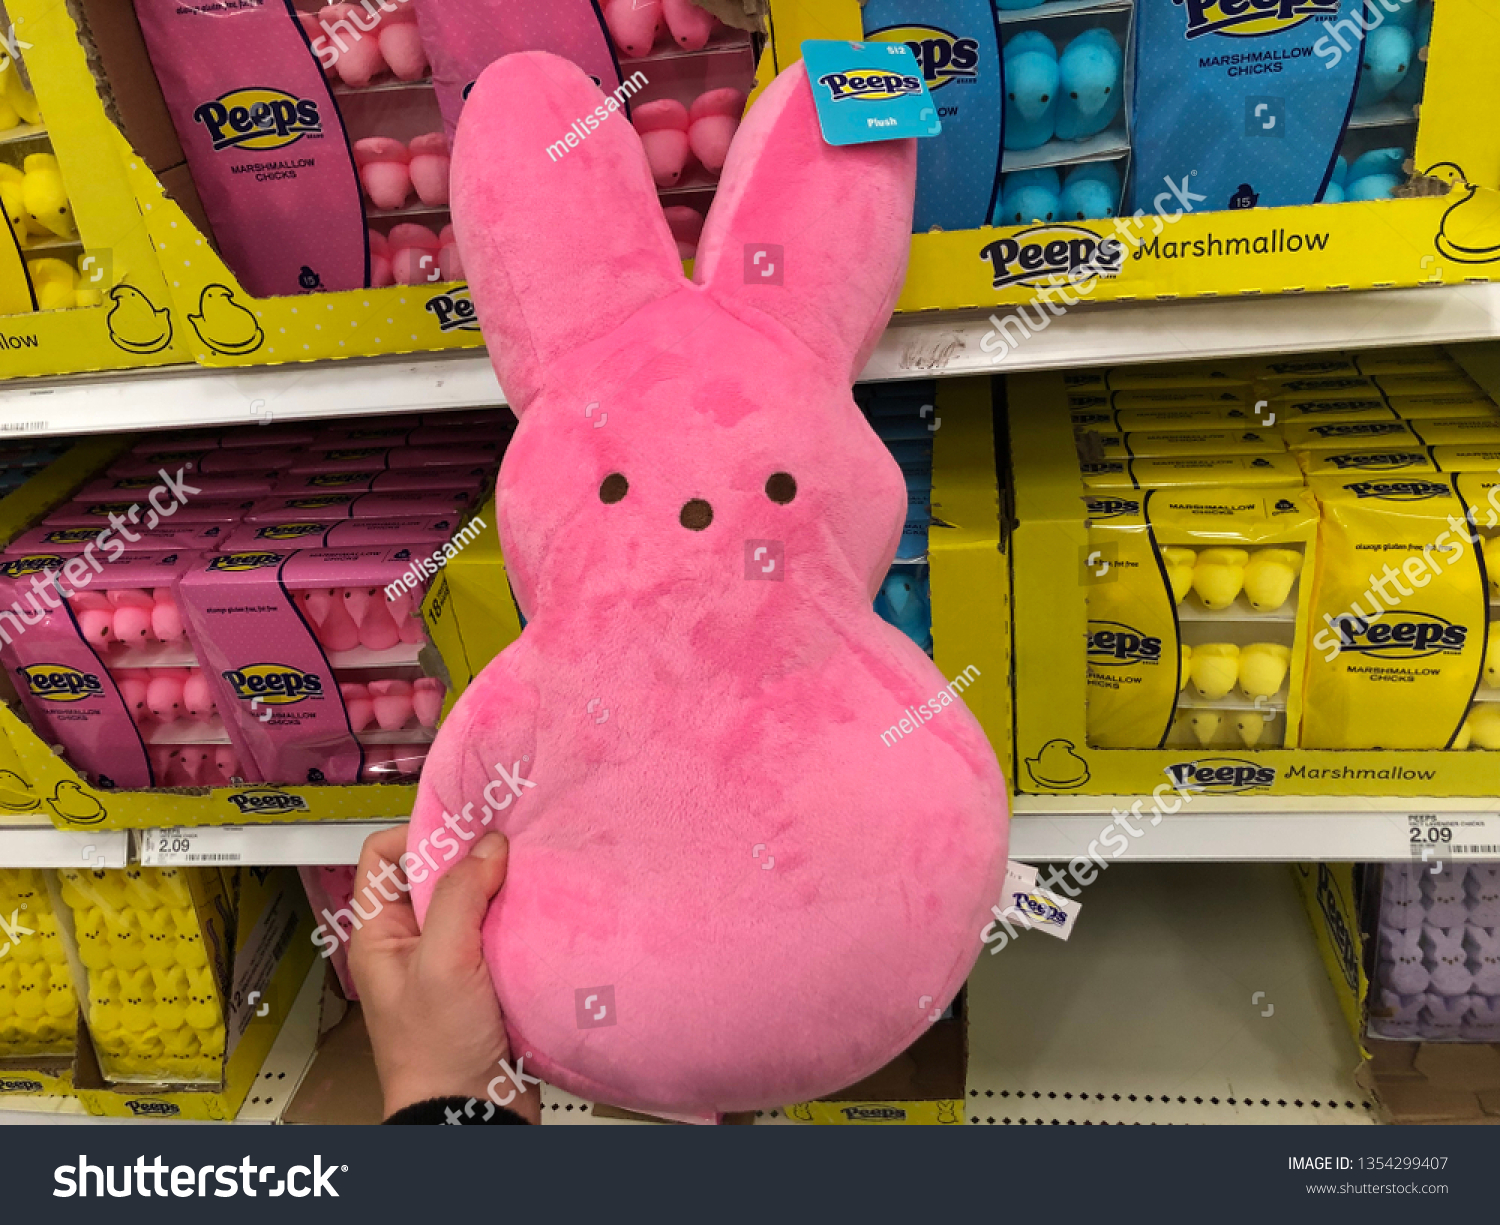 peeps giant plush bunny